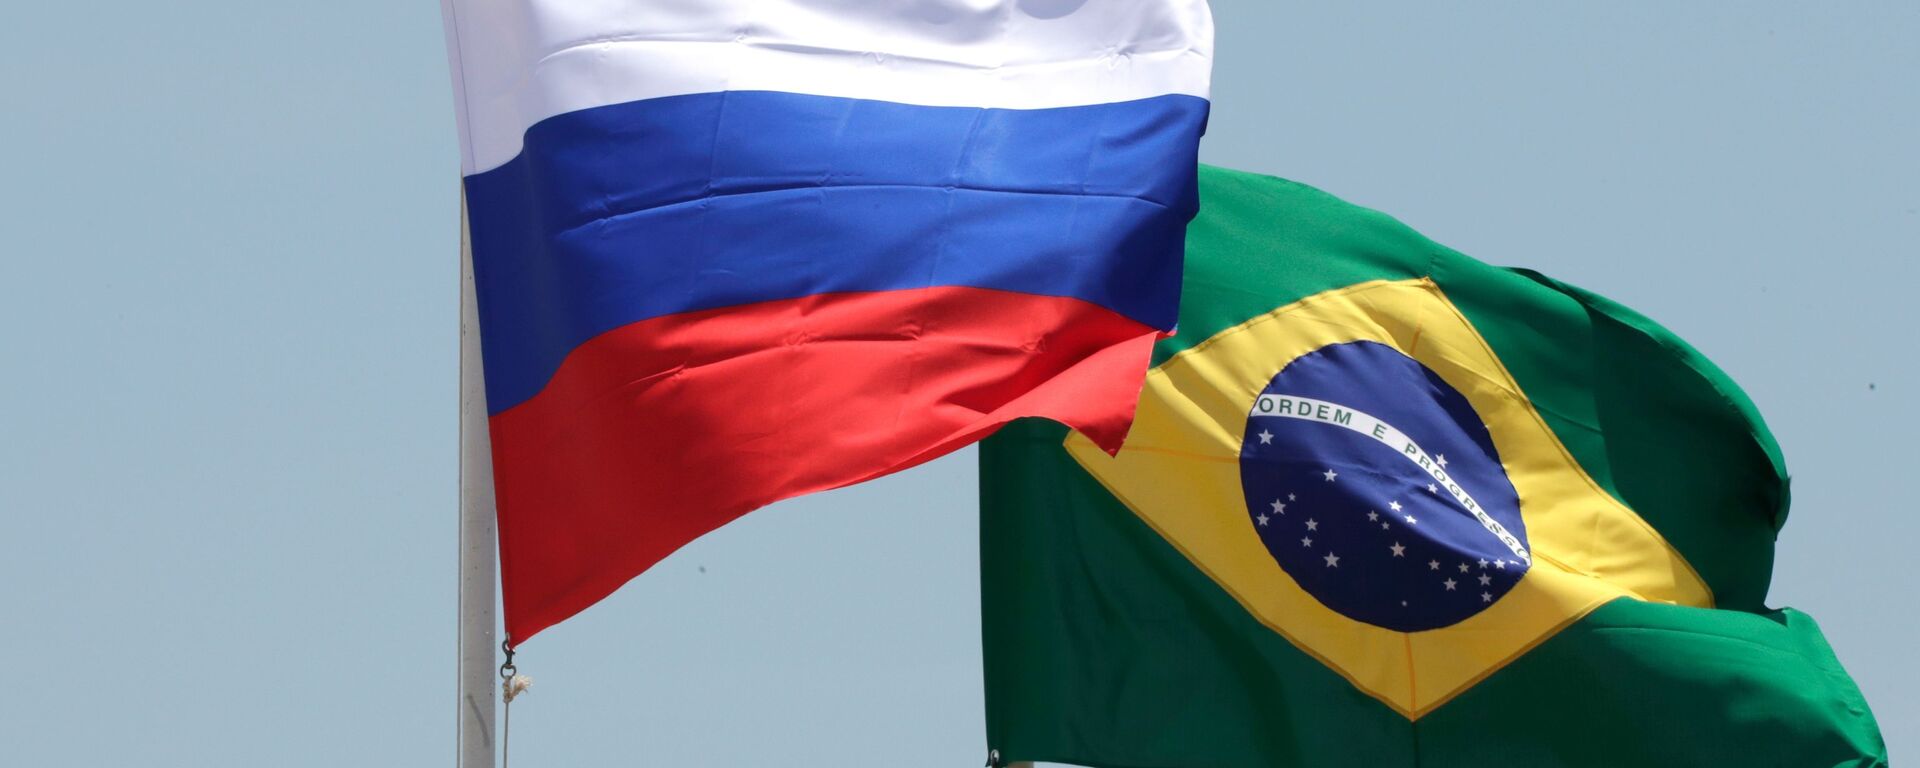 Bandeiras da Rússia e do Brasil - Sputnik Brasil, 1920, 02.11.2021